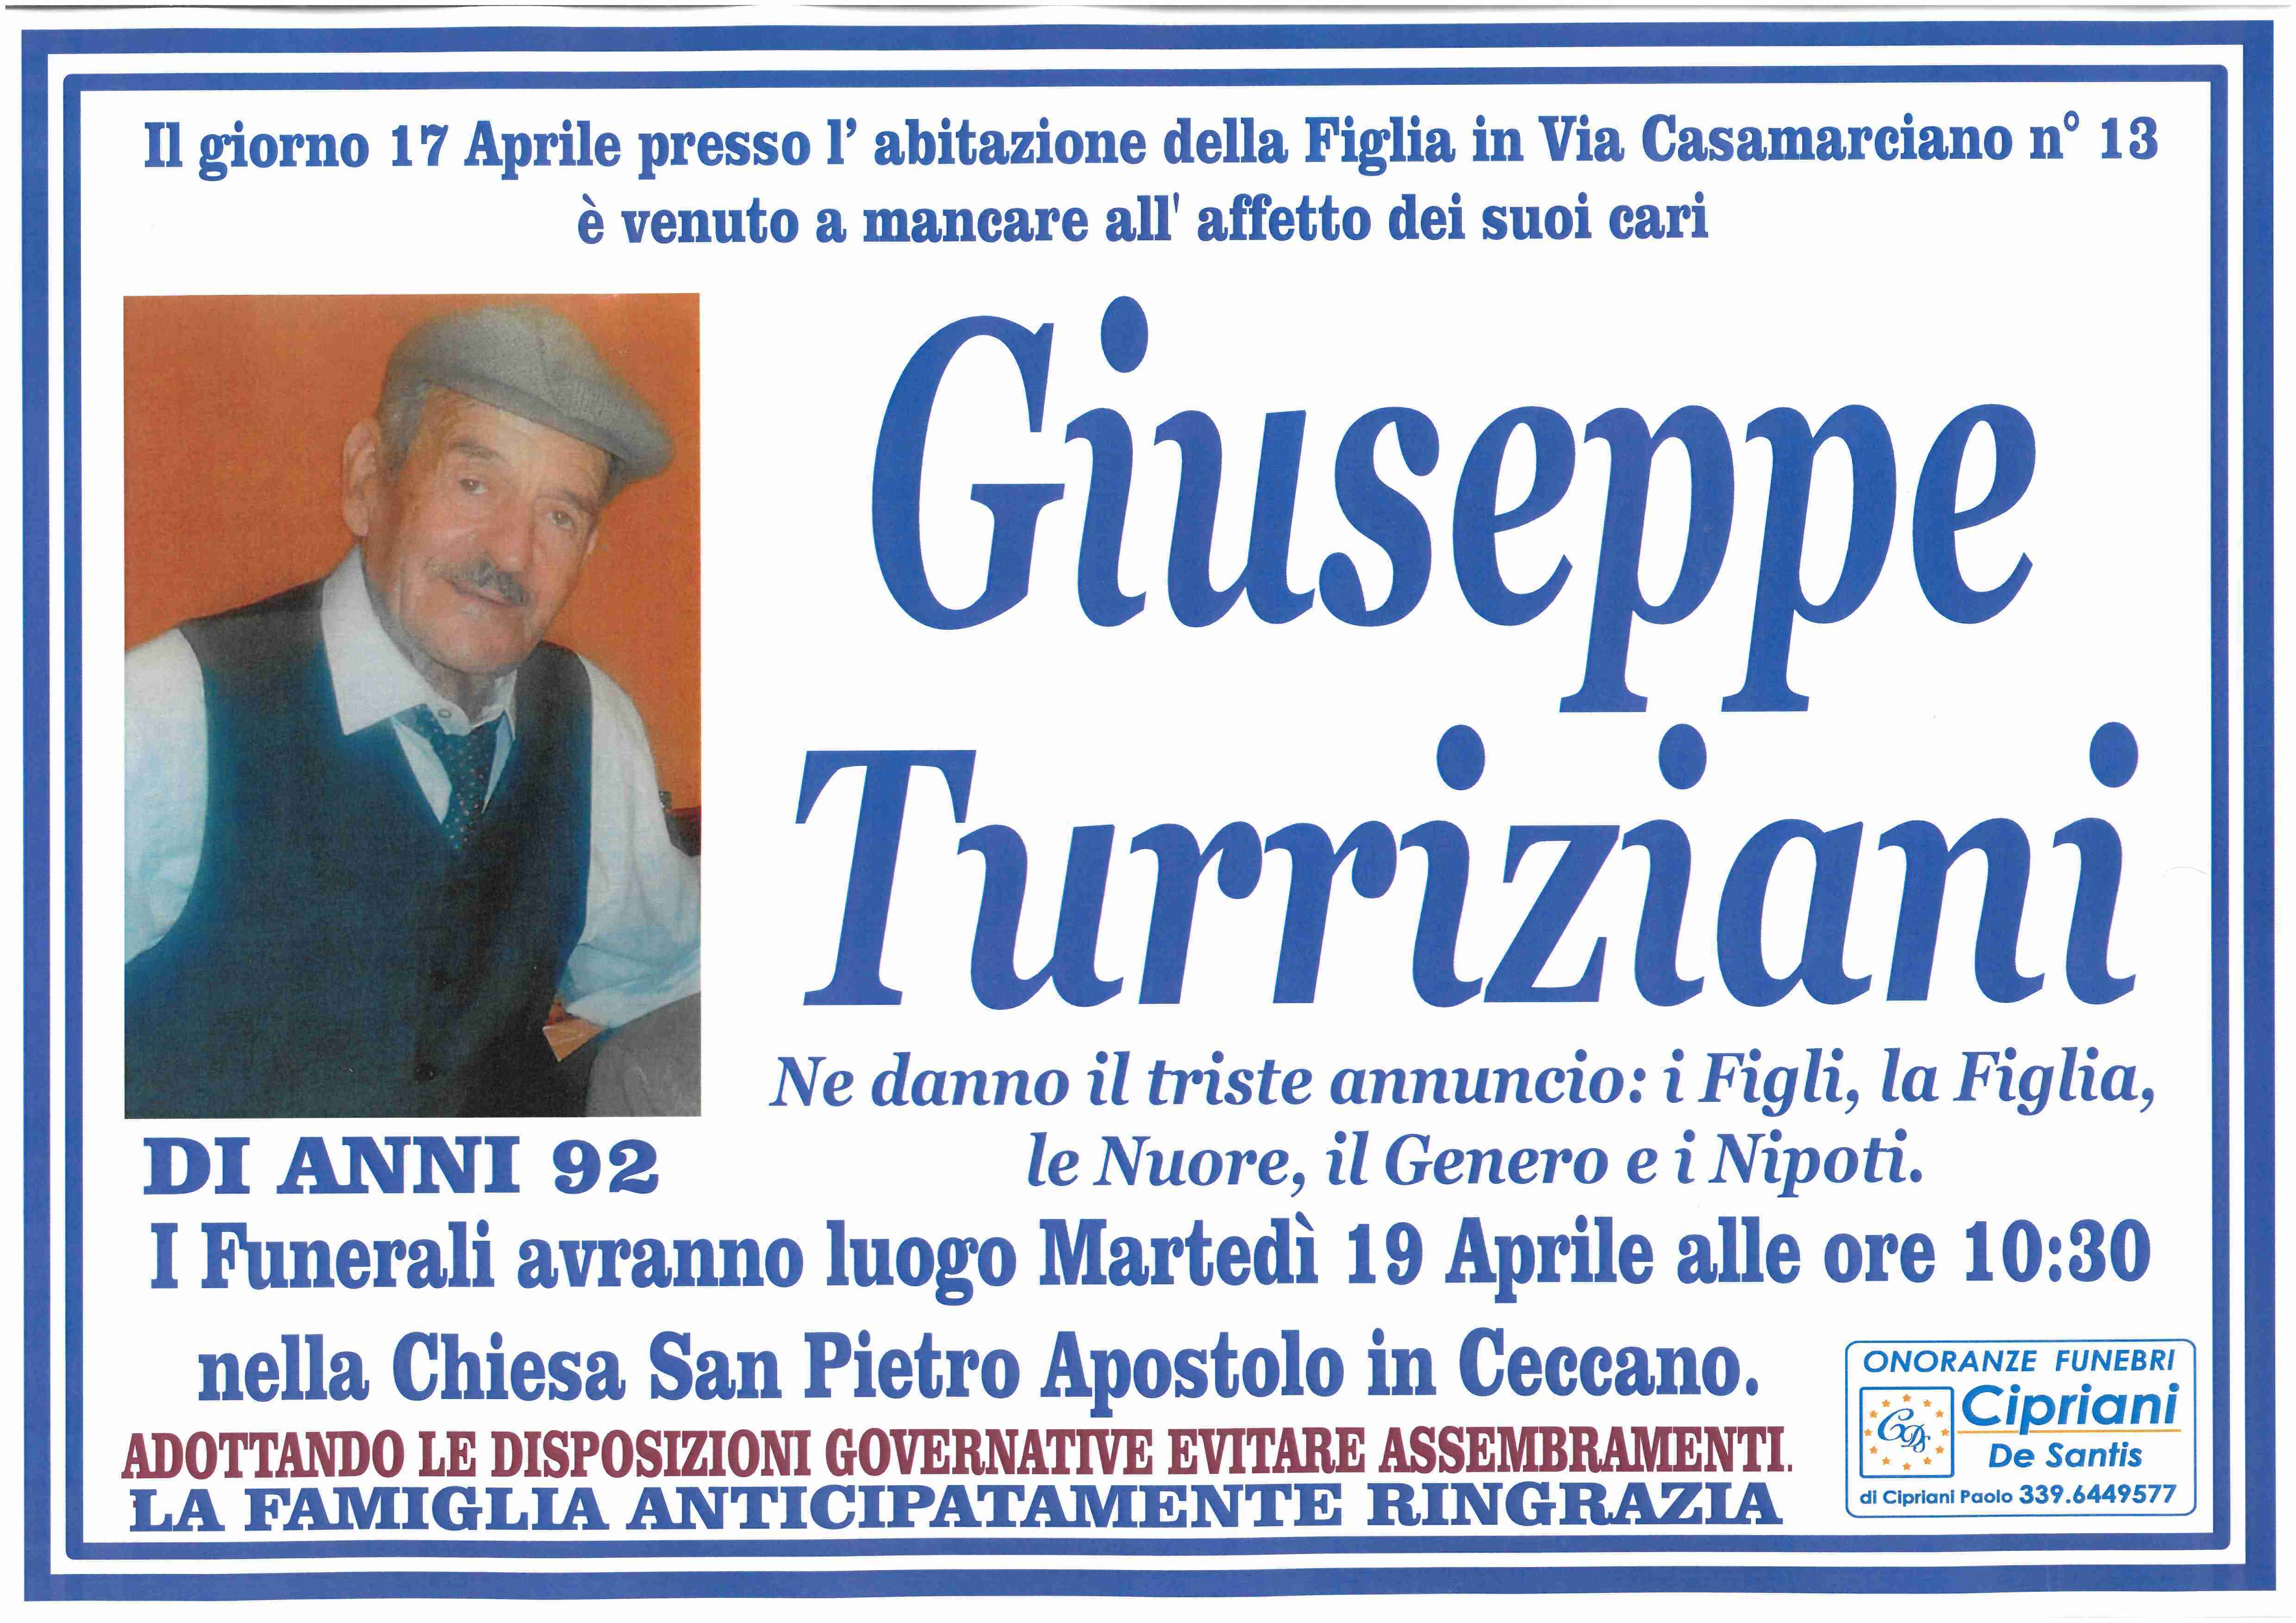 Giuseppe Turriziani